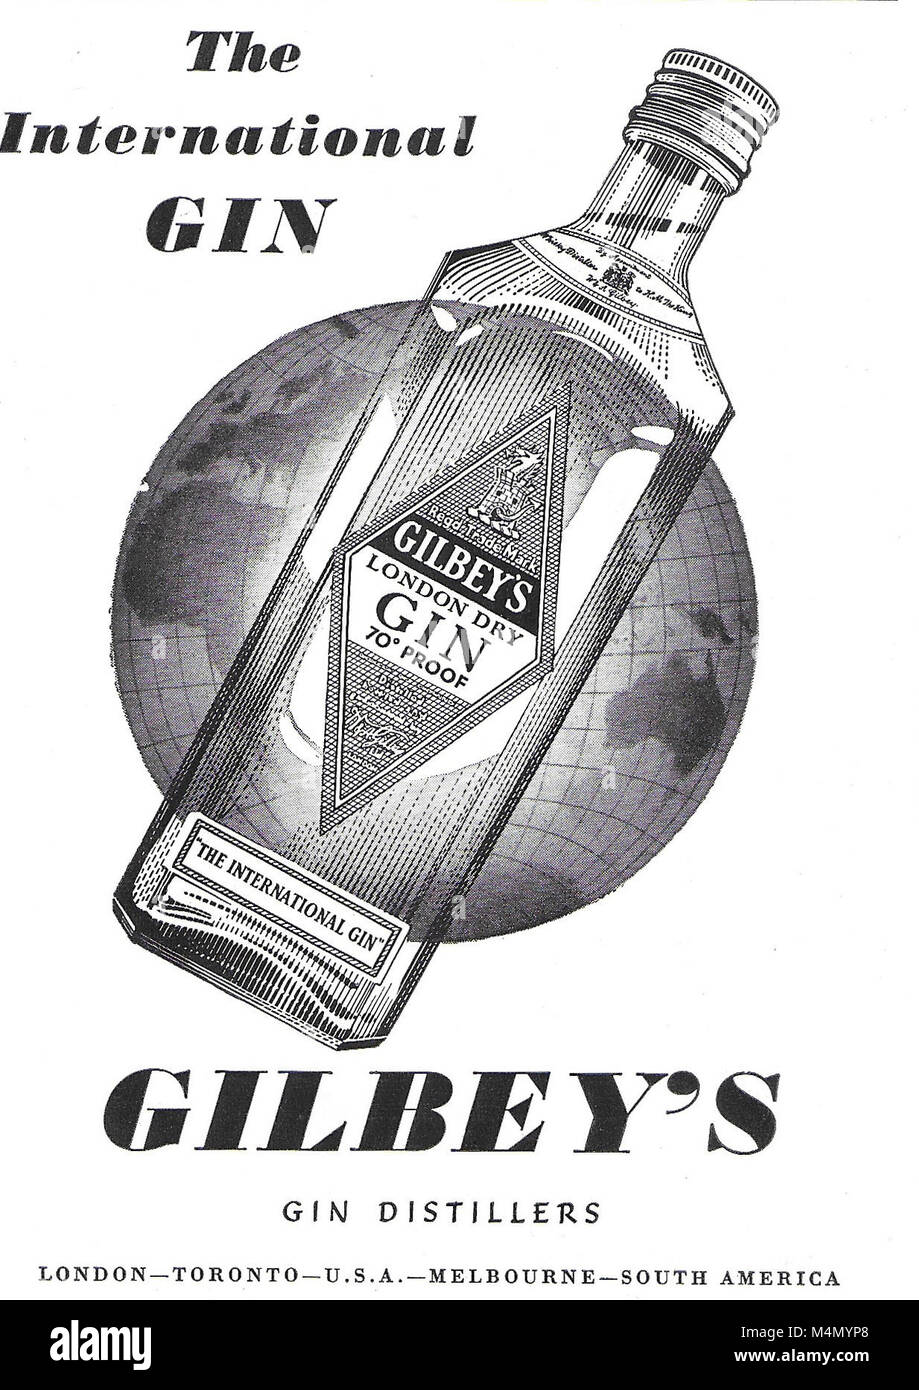 Gilbey's gin annonce, publicité dans Country Life Magazine UK 1951 Banque D'Images